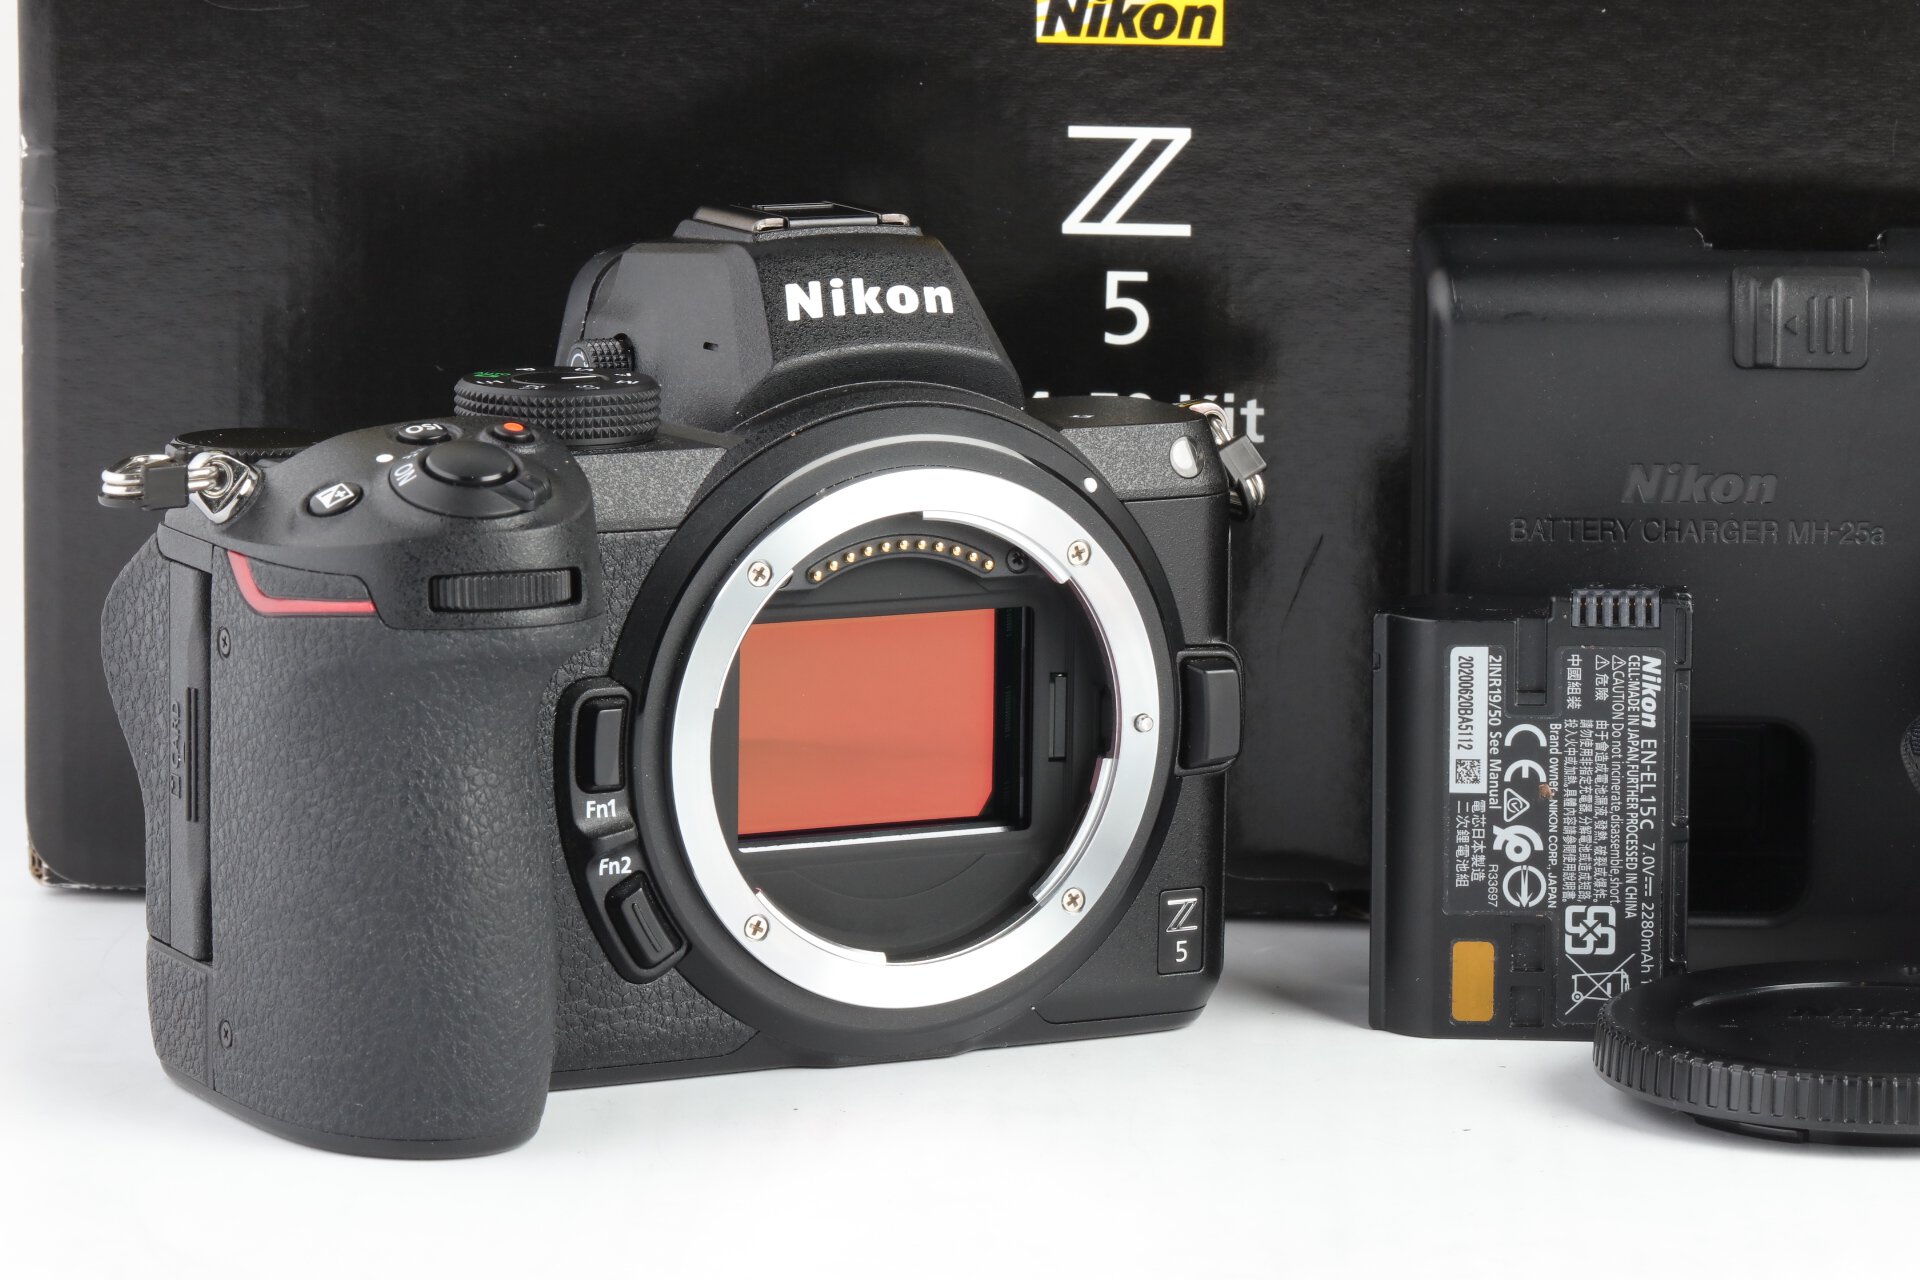 Nikon Z5 Gehäuse ca. 9200 Auslösungen